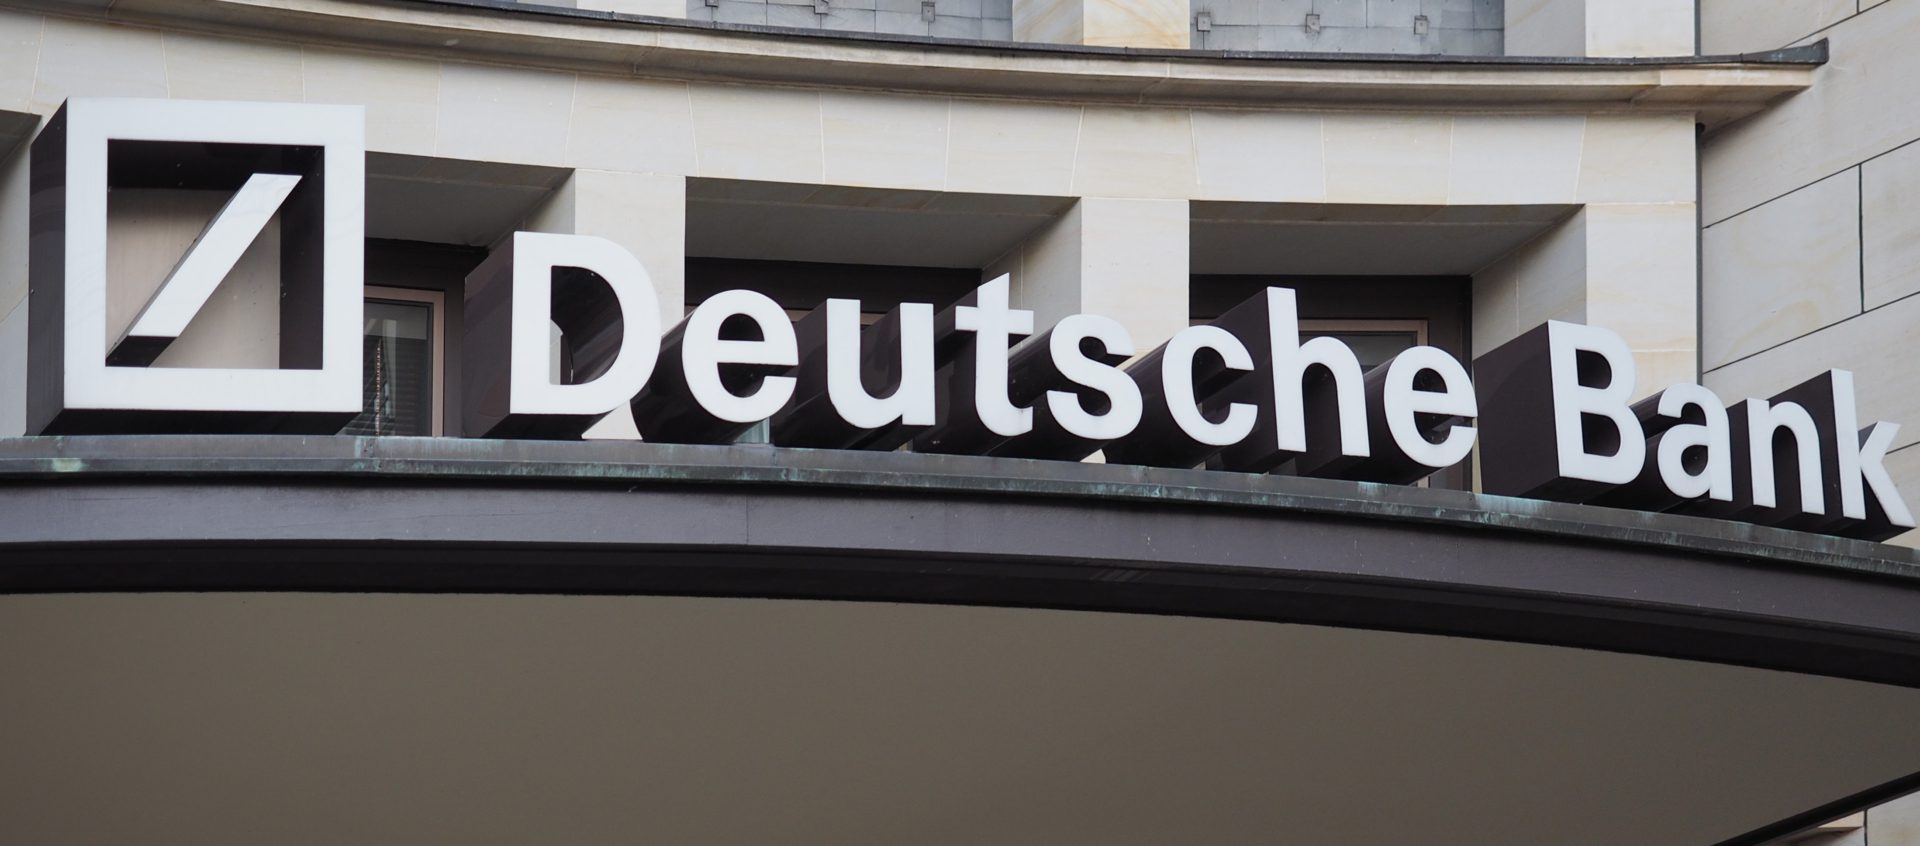 Analisten van Deutsche Bank verwachten dat Bitcoin koers herstelt tot $28K